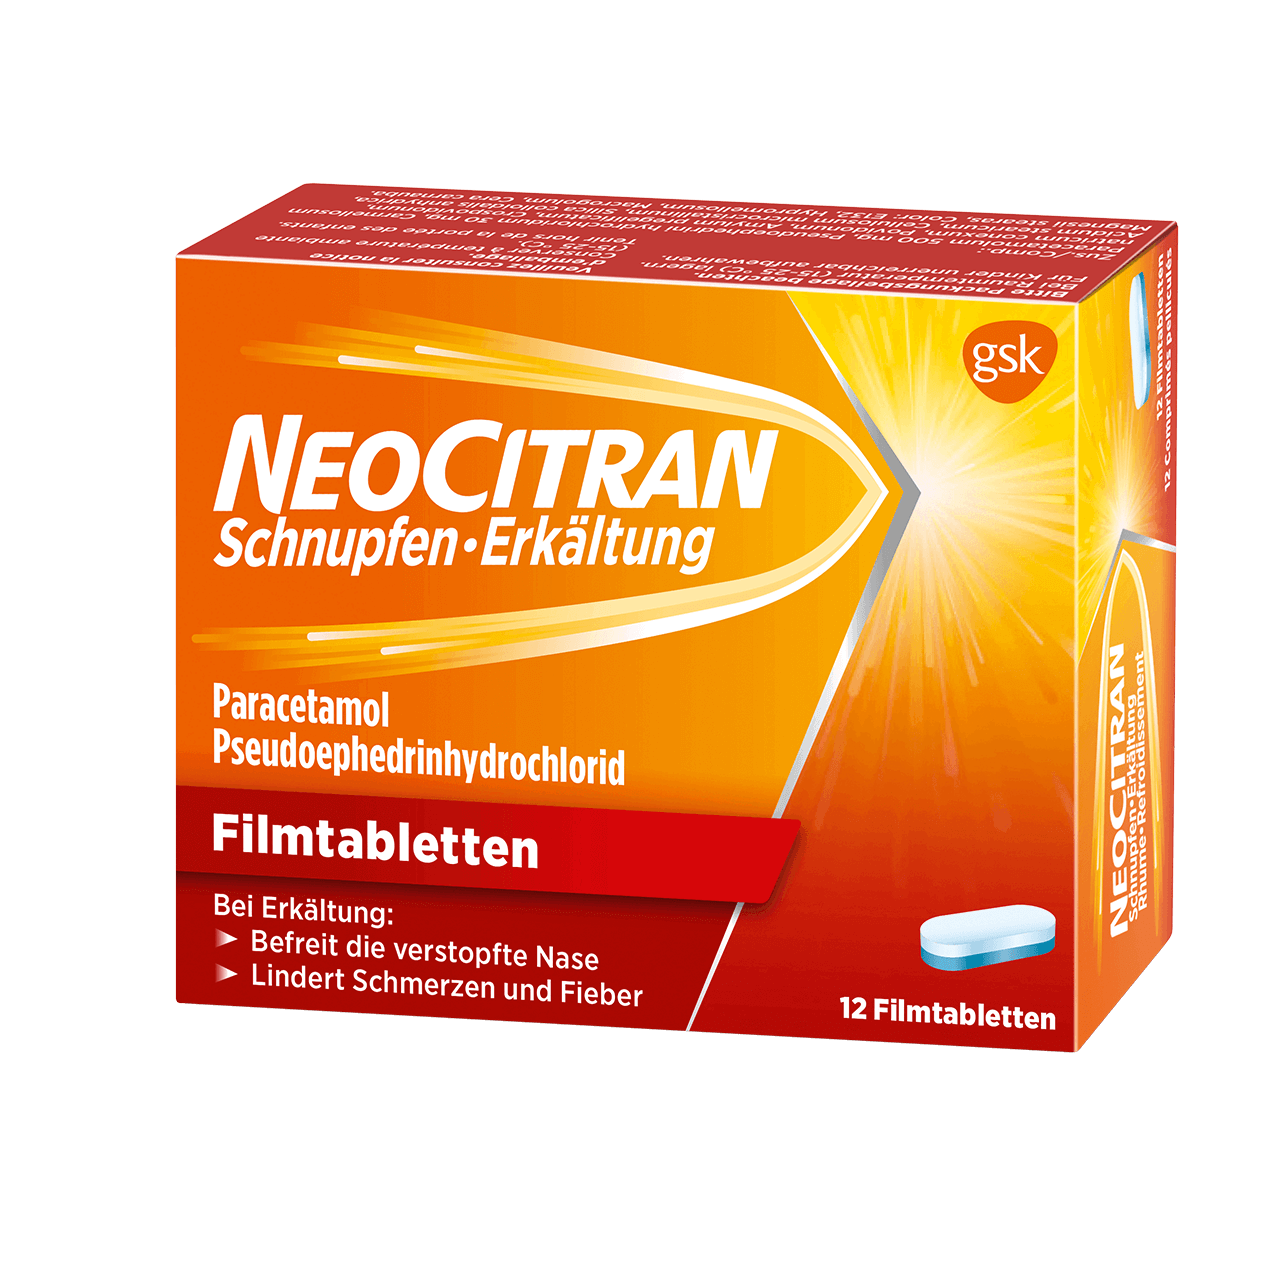 NeoCitran Schnupfen/Erkältung Filmtabletten